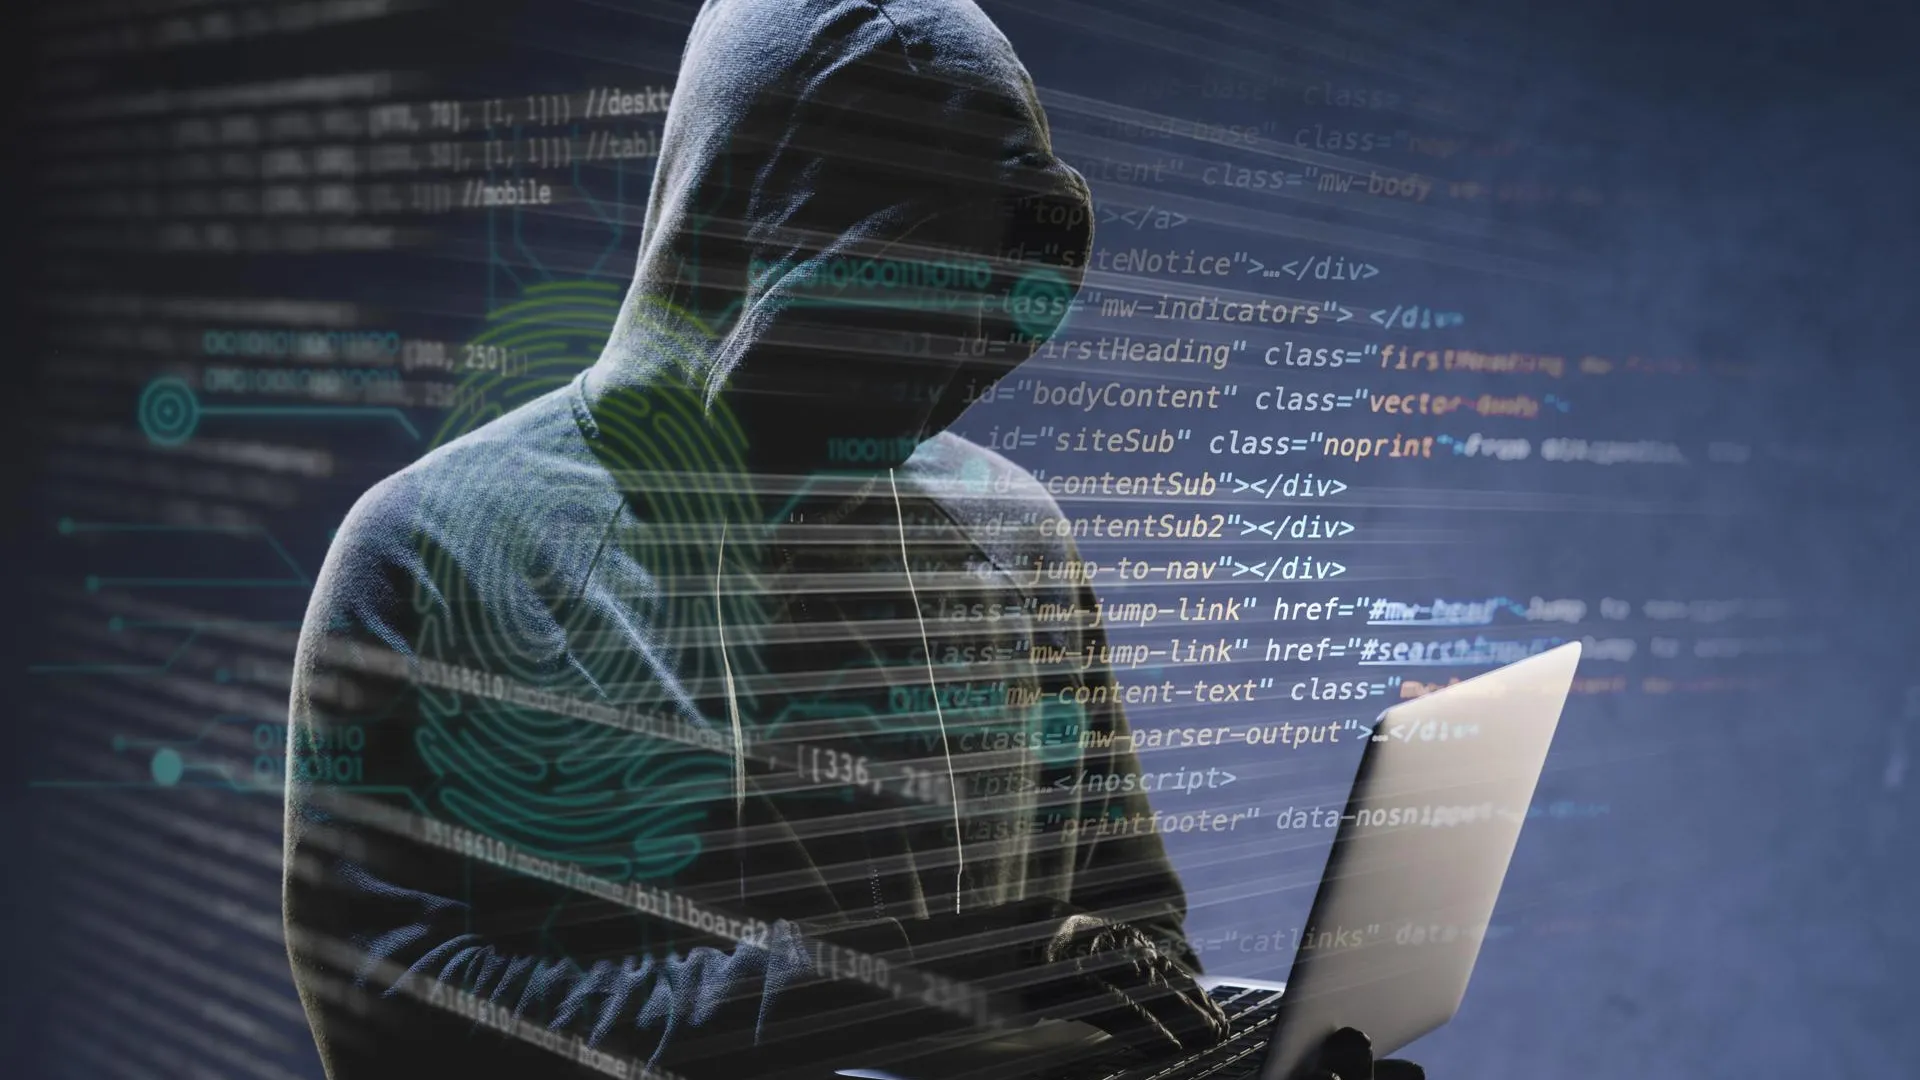 Хакеры атаковали сайты штаба по вопросам военнопленных на Украине